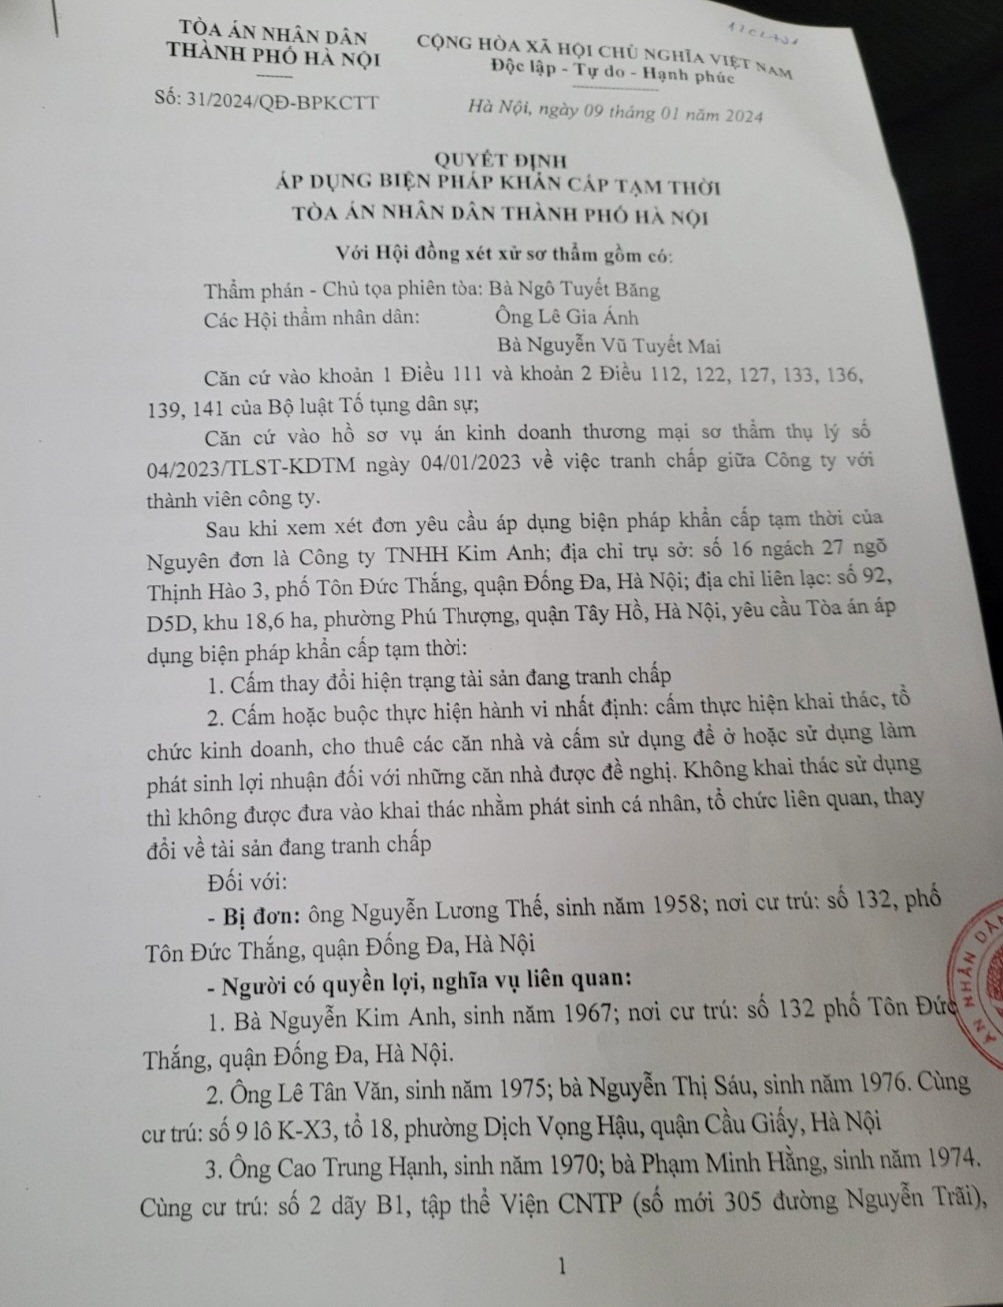 Báo cáo đề nghị kháng nghị theo thủ tục giám đốc thẩm của Viện KSND thành phố Hà Nội